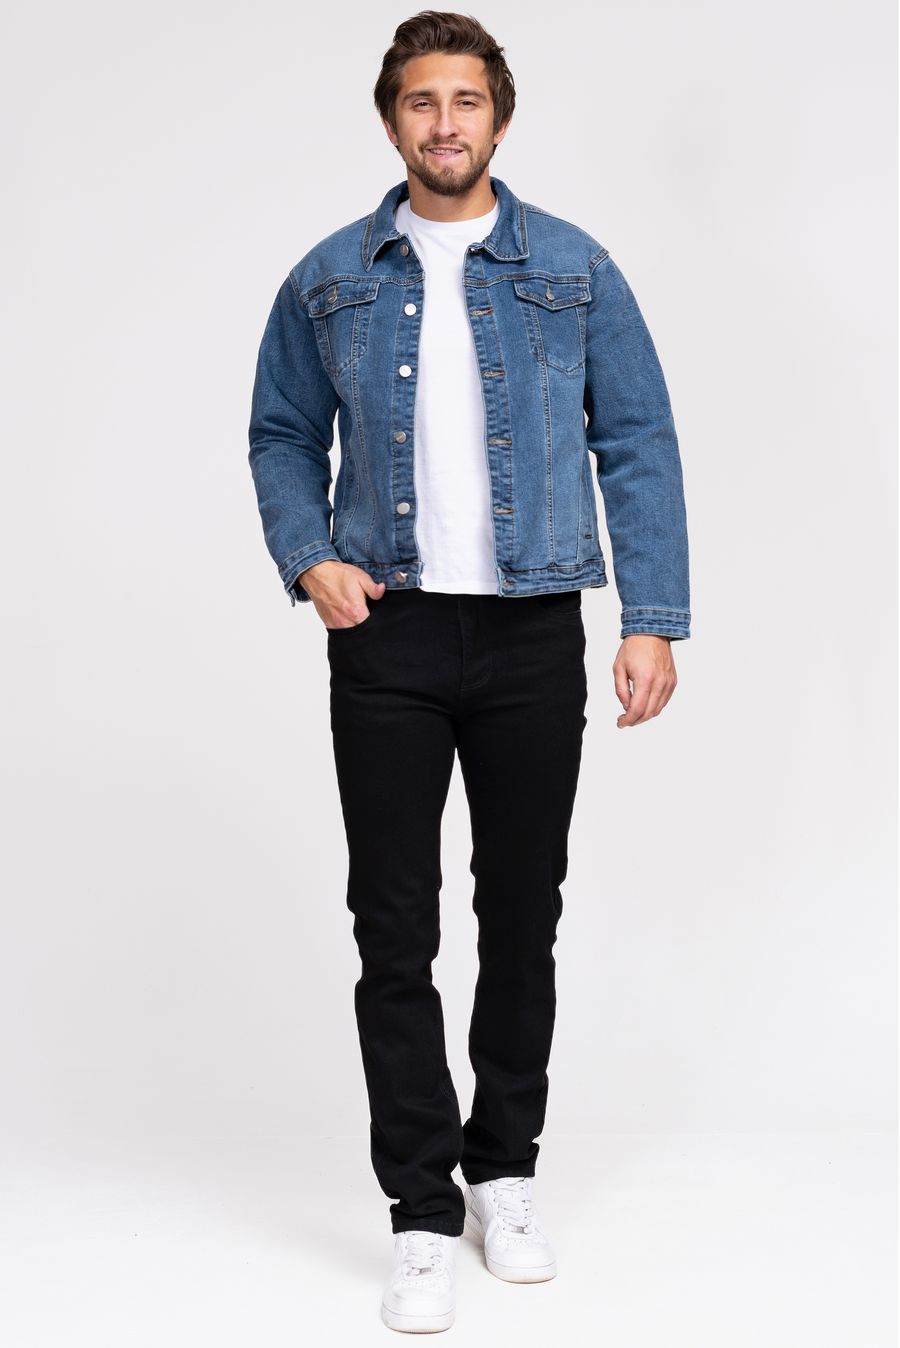 Пиджак мужской (джинсовка) LRZBS 2361 - фото 1